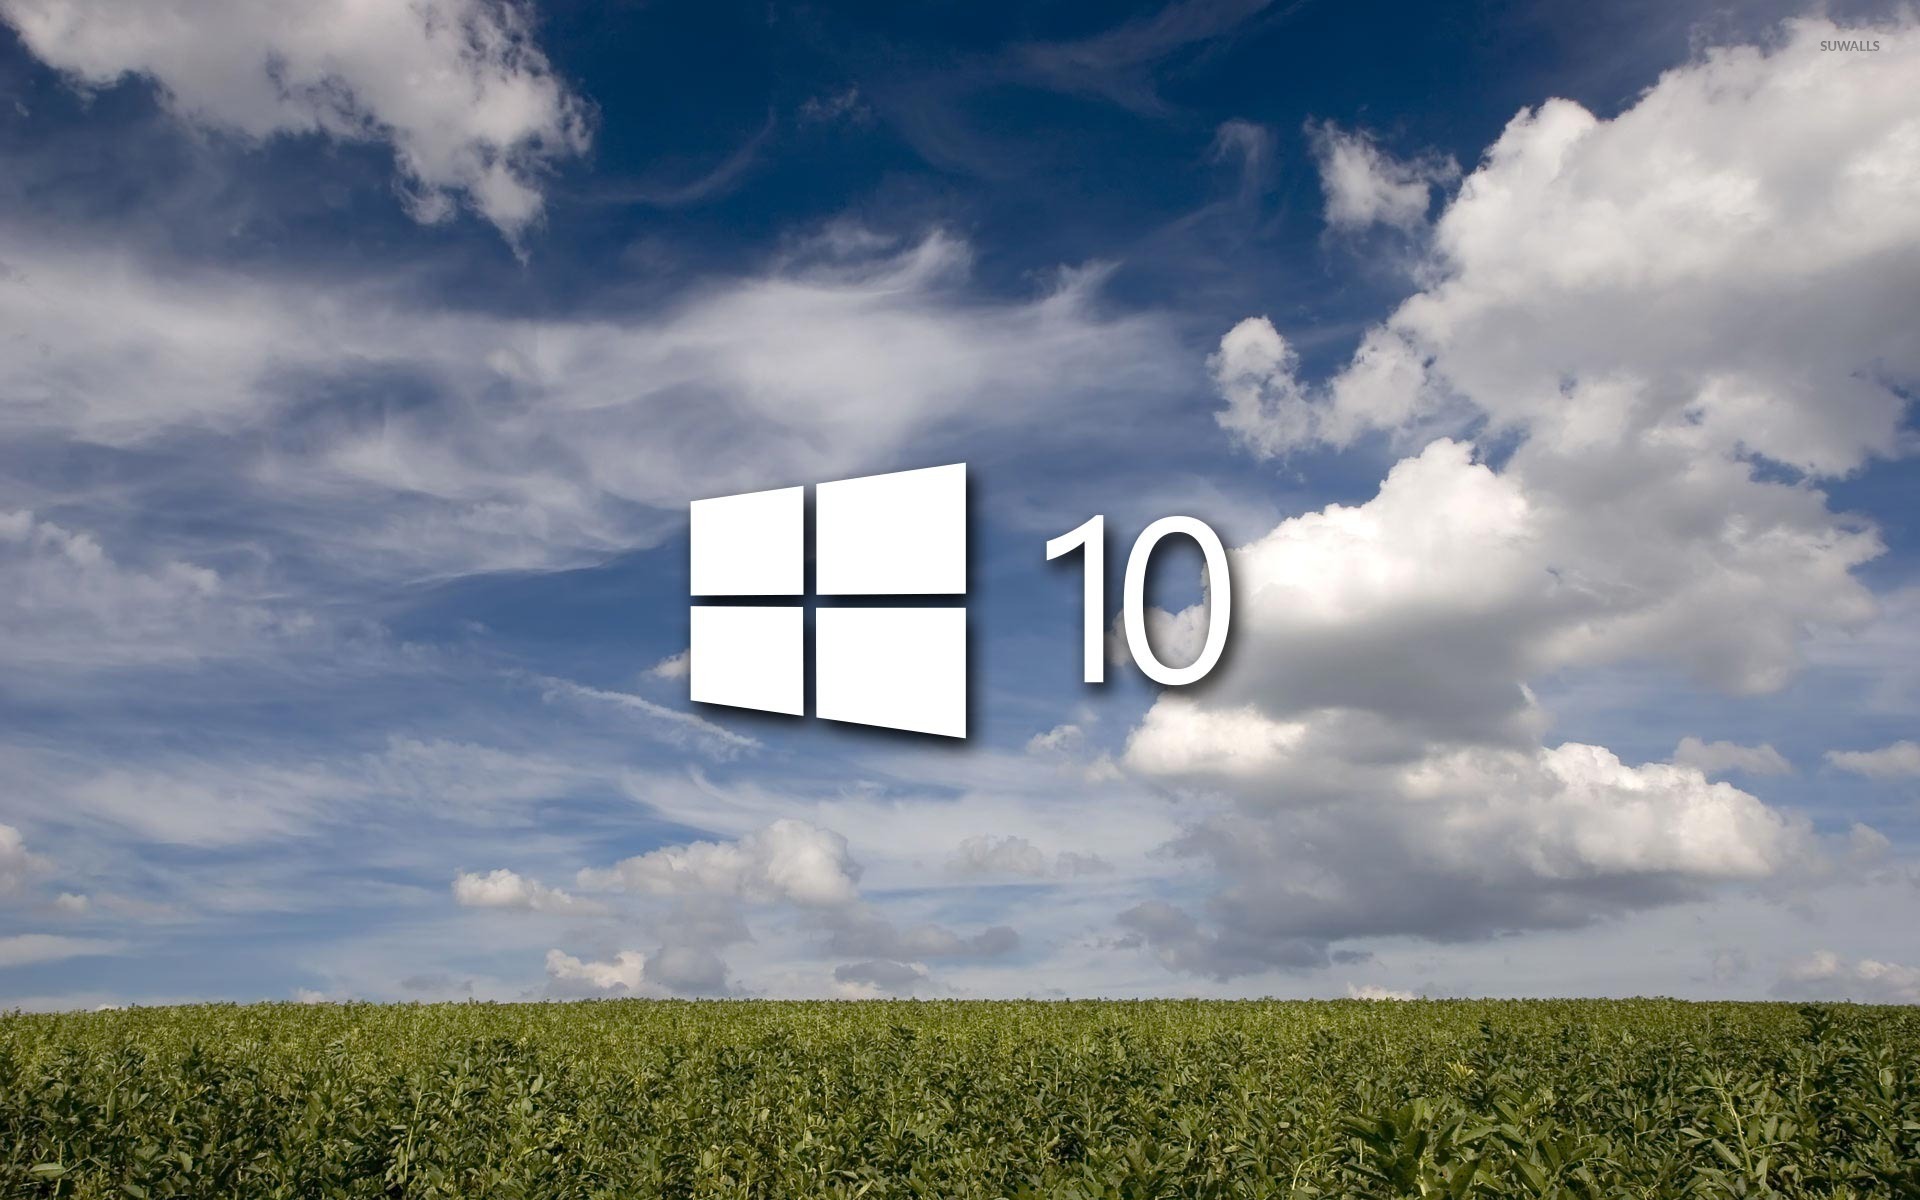 Облако windows 10